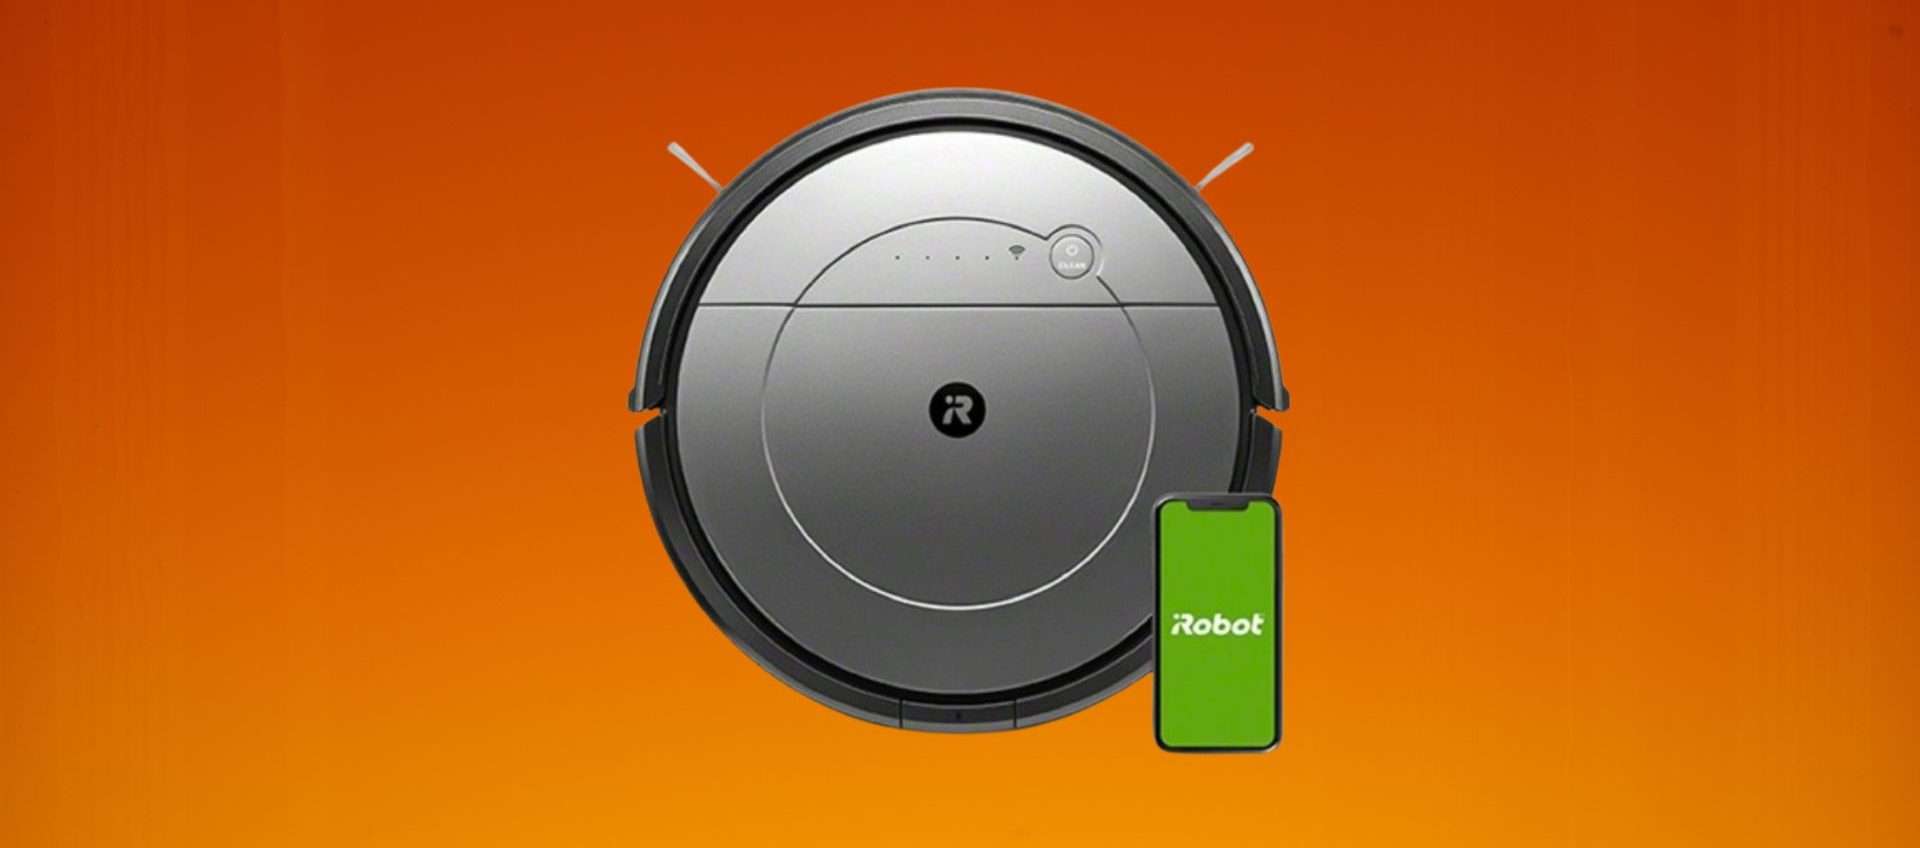 L'iRobot Roomba Combo è in offerta su Amazon: risparmi 85€